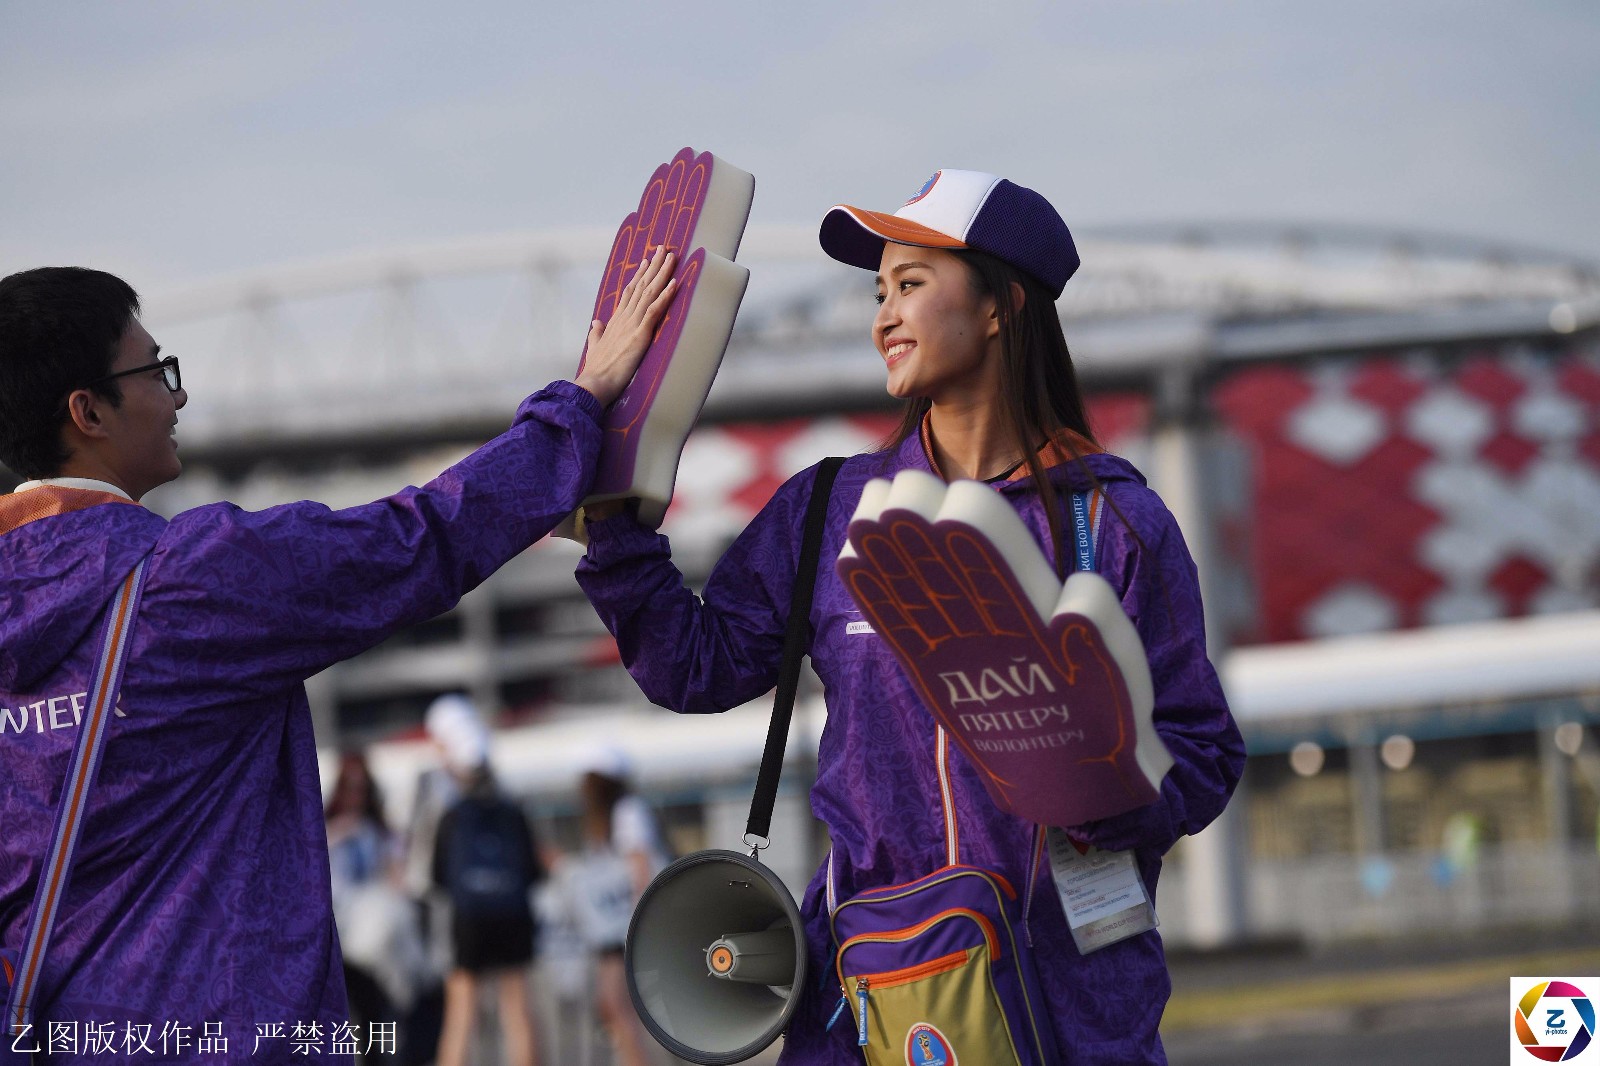 世界杯志愿者中国女孩,因太美常被球迷搂着拍